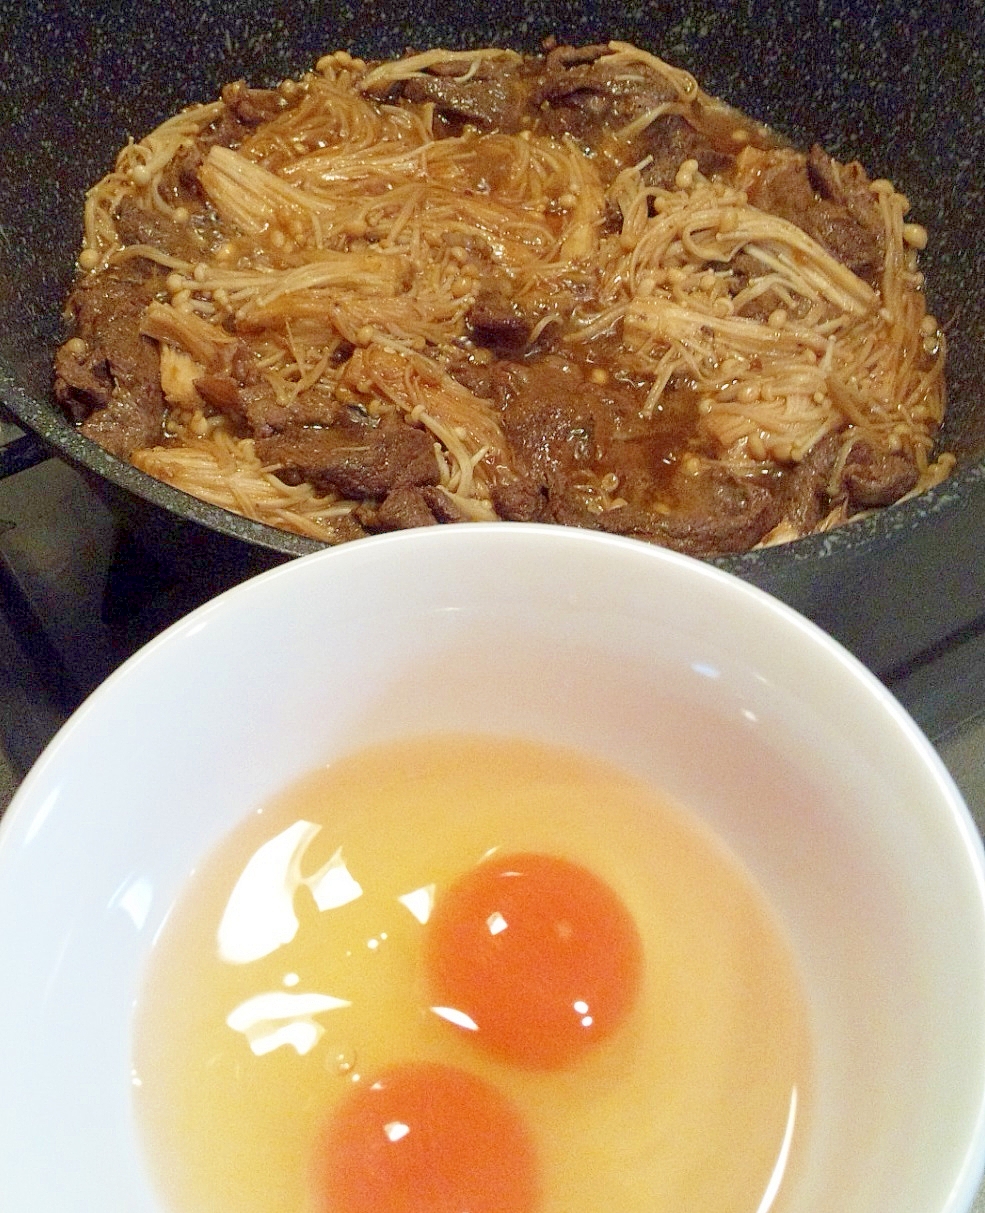 フライパンで蒸して煮る鍋・韓国風すき焼き☆